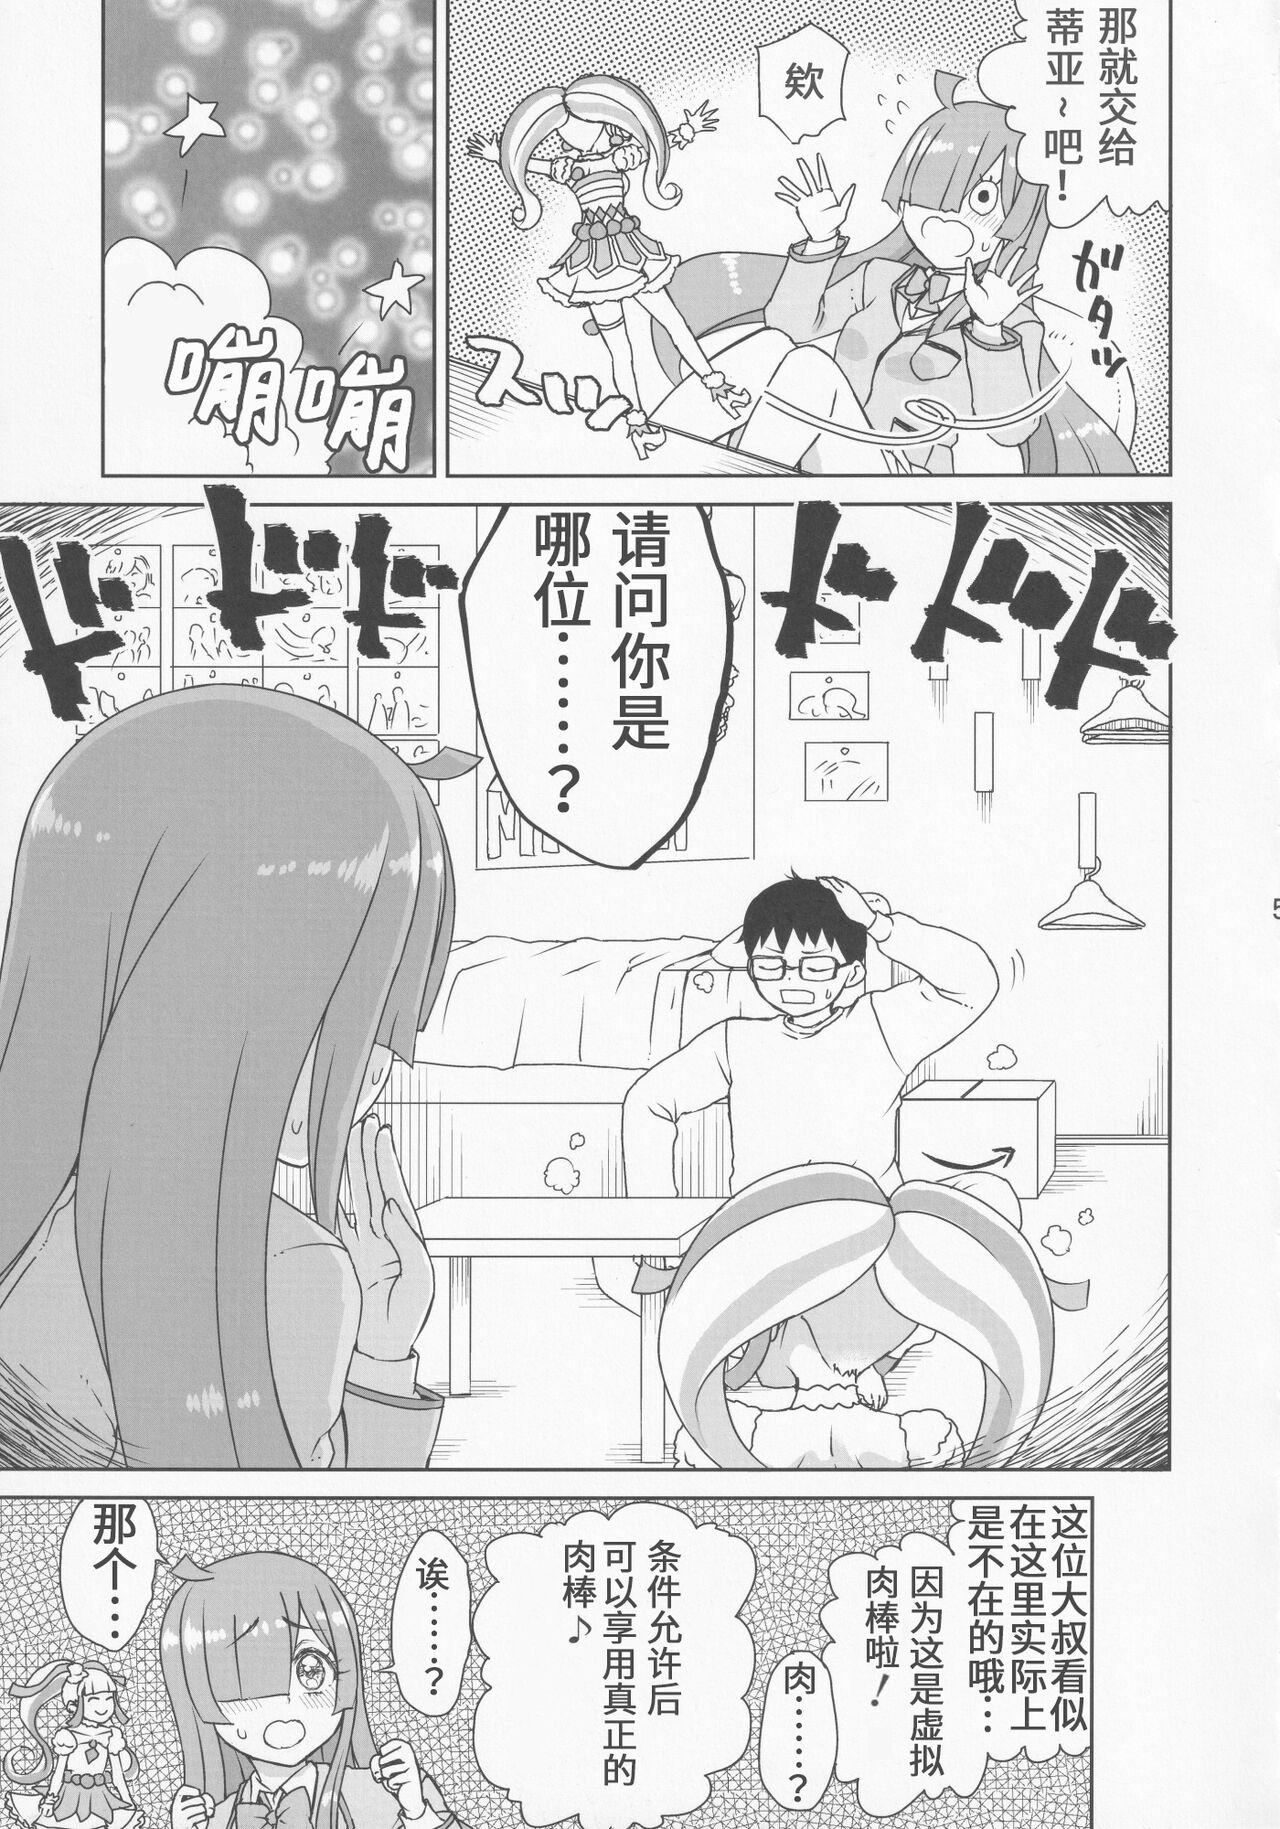 Asians Kimi no Na wa - Kiratto pri chan  - Page 7